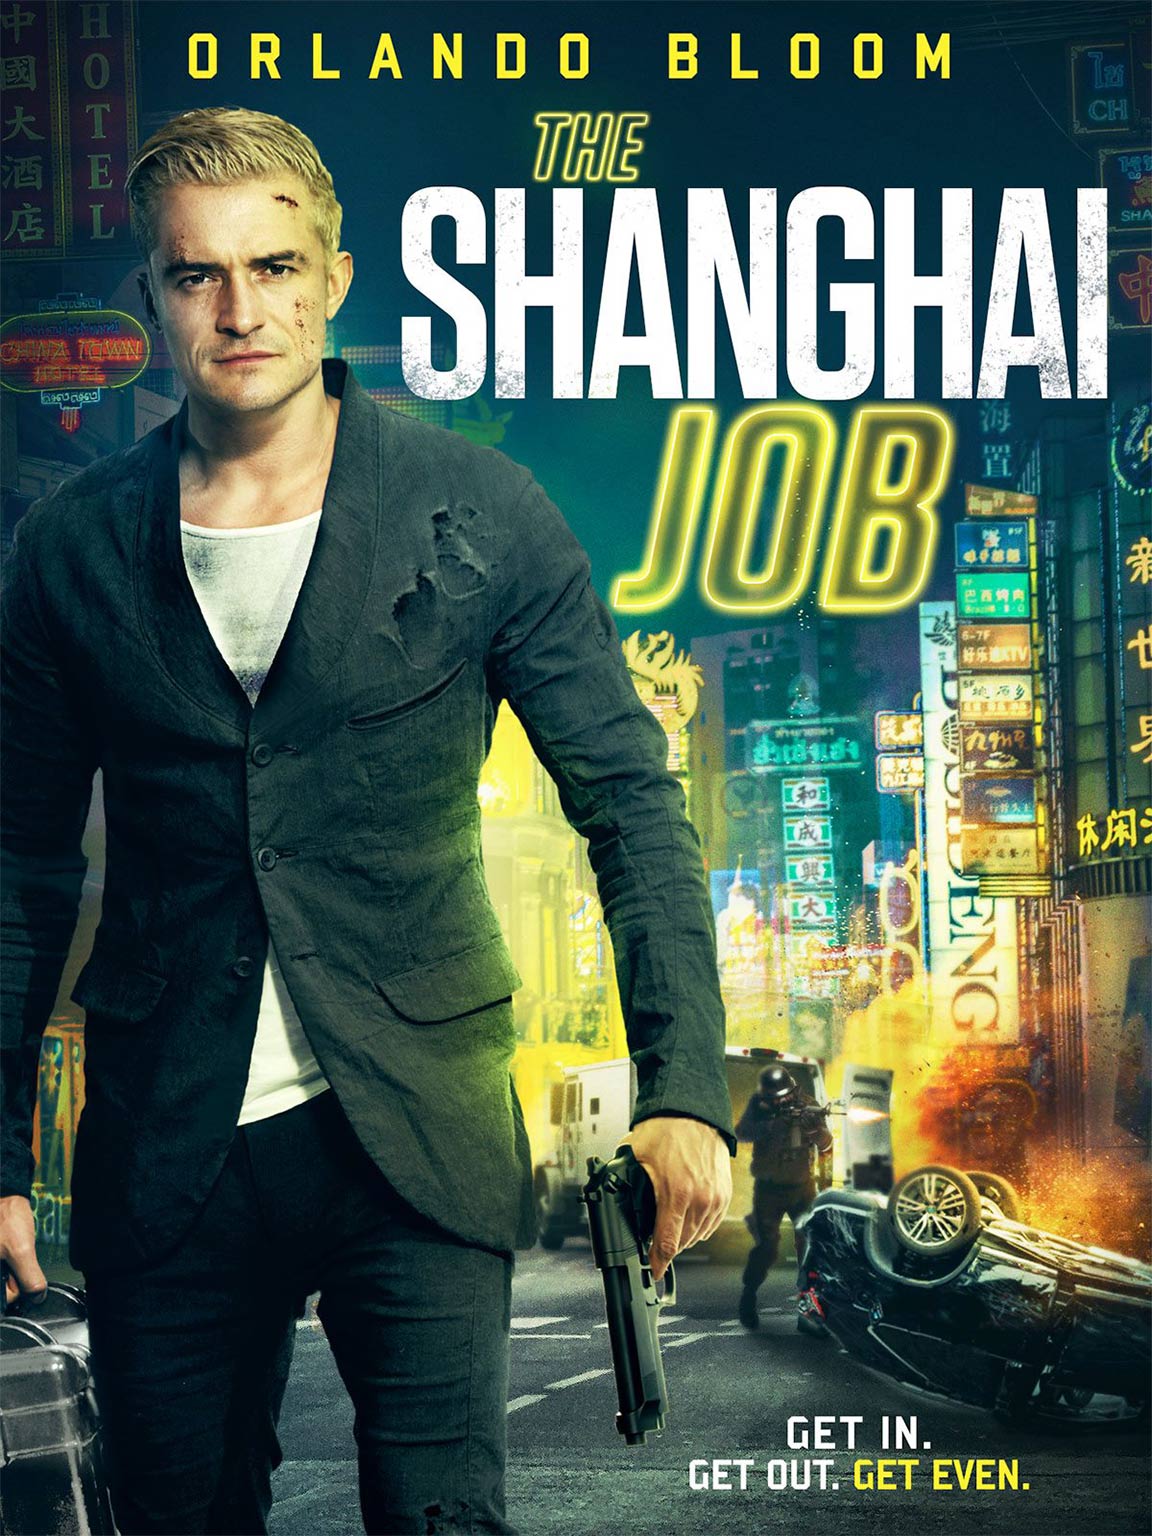 S.M.A.R.T. Chase (The Shanghai Job)-áá¡ á¡á£á áááá¡ á¨ááááá